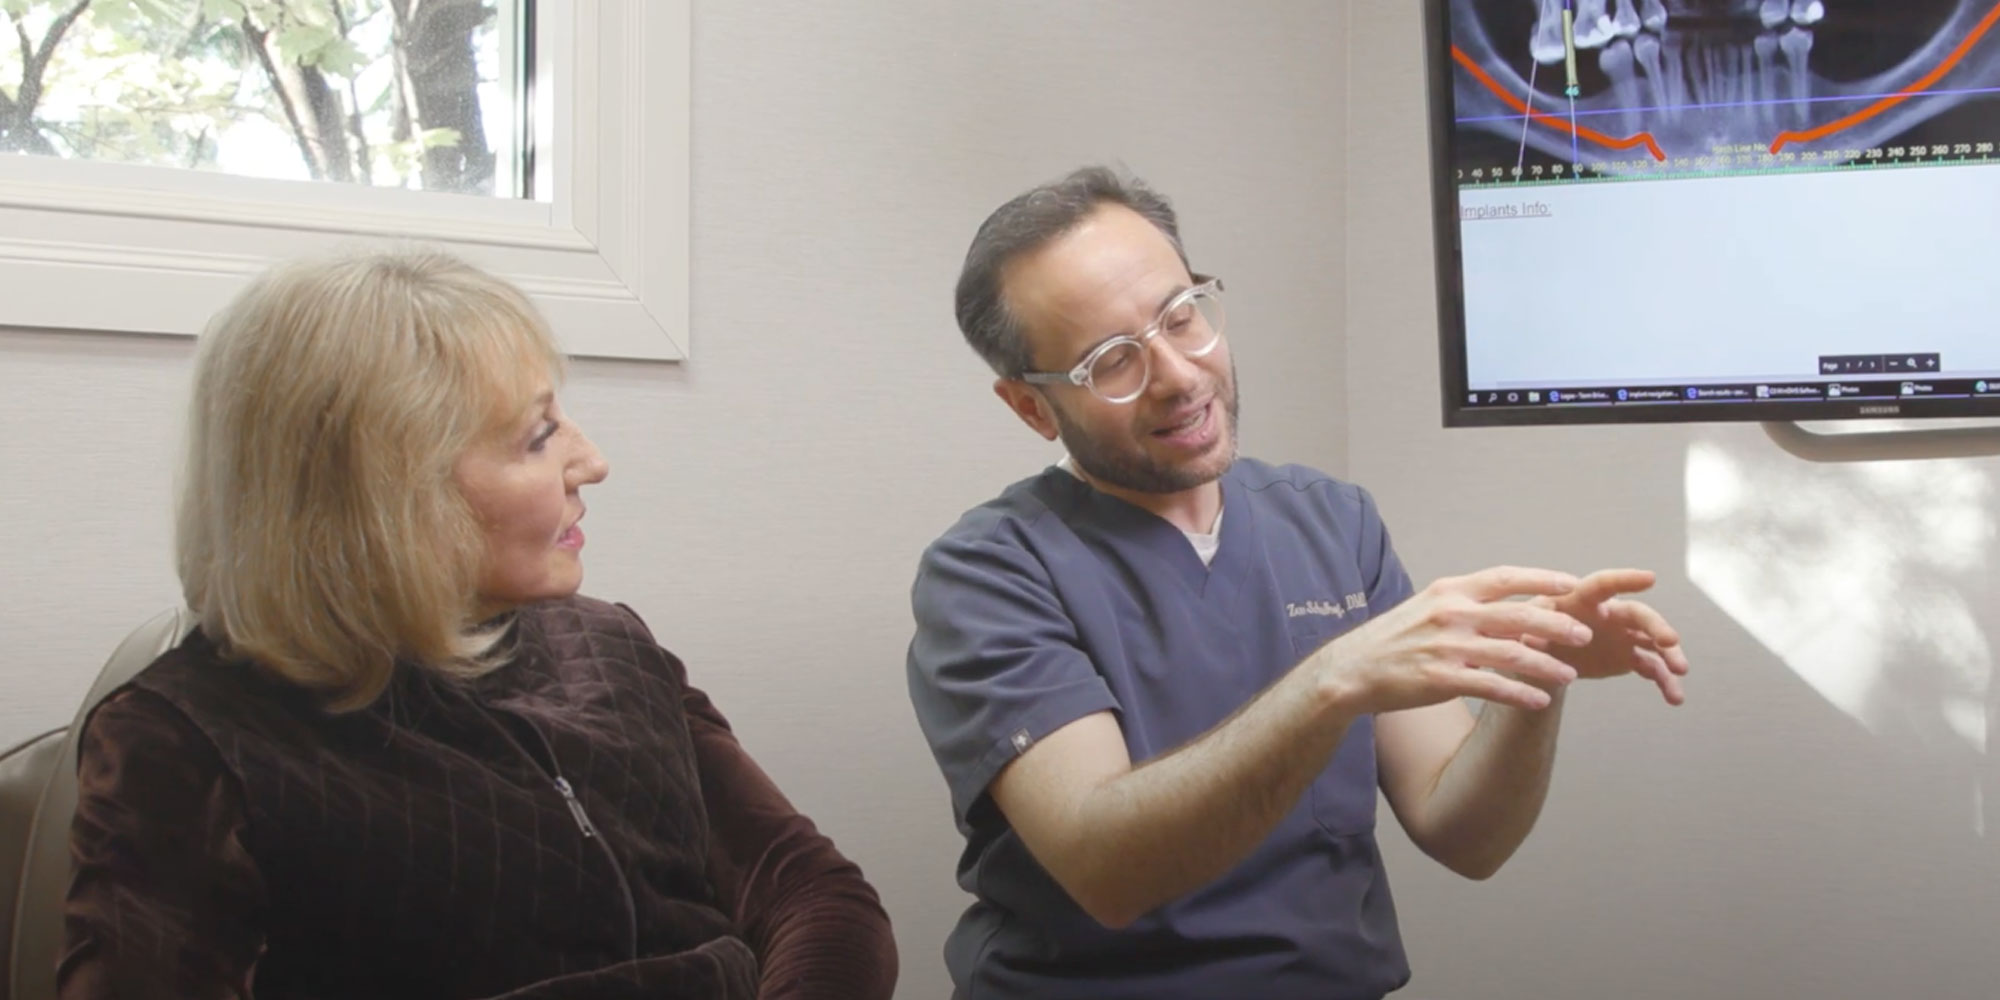 dr schulhof explains how dental procedure works